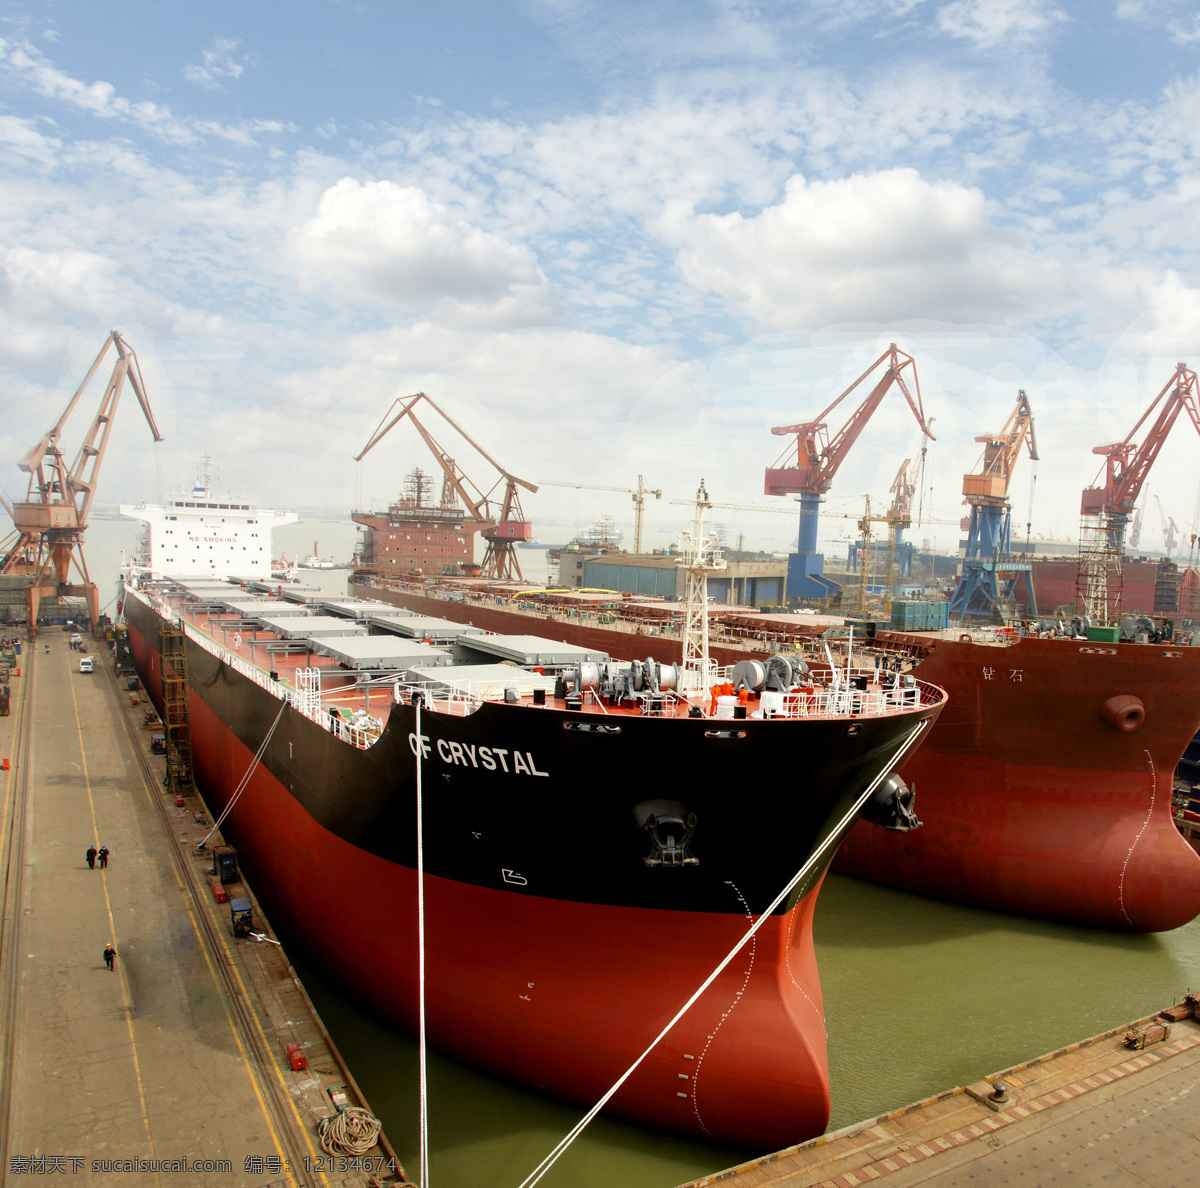 工业码头 工业生产 货运港口 船只 货柜 海上运输 货船 码头装卸 现代科技